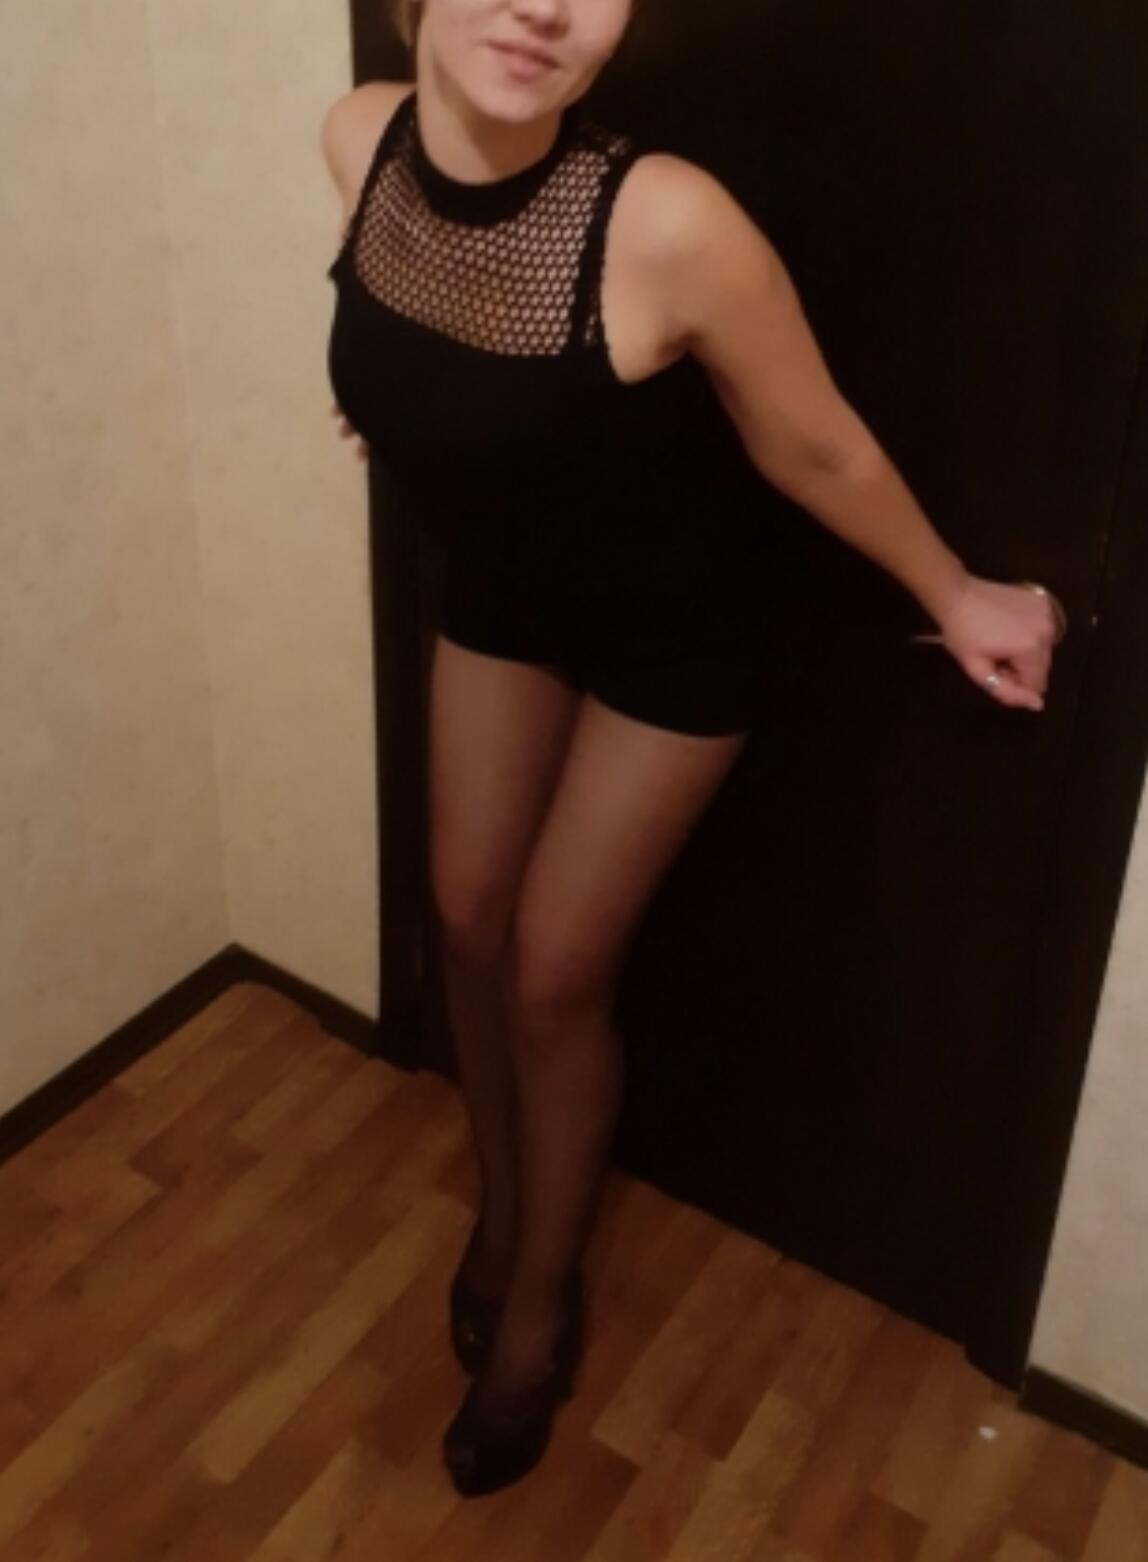 Проститутка Марго, фото 3, тел: 0960407932. Оболонский район - Киев